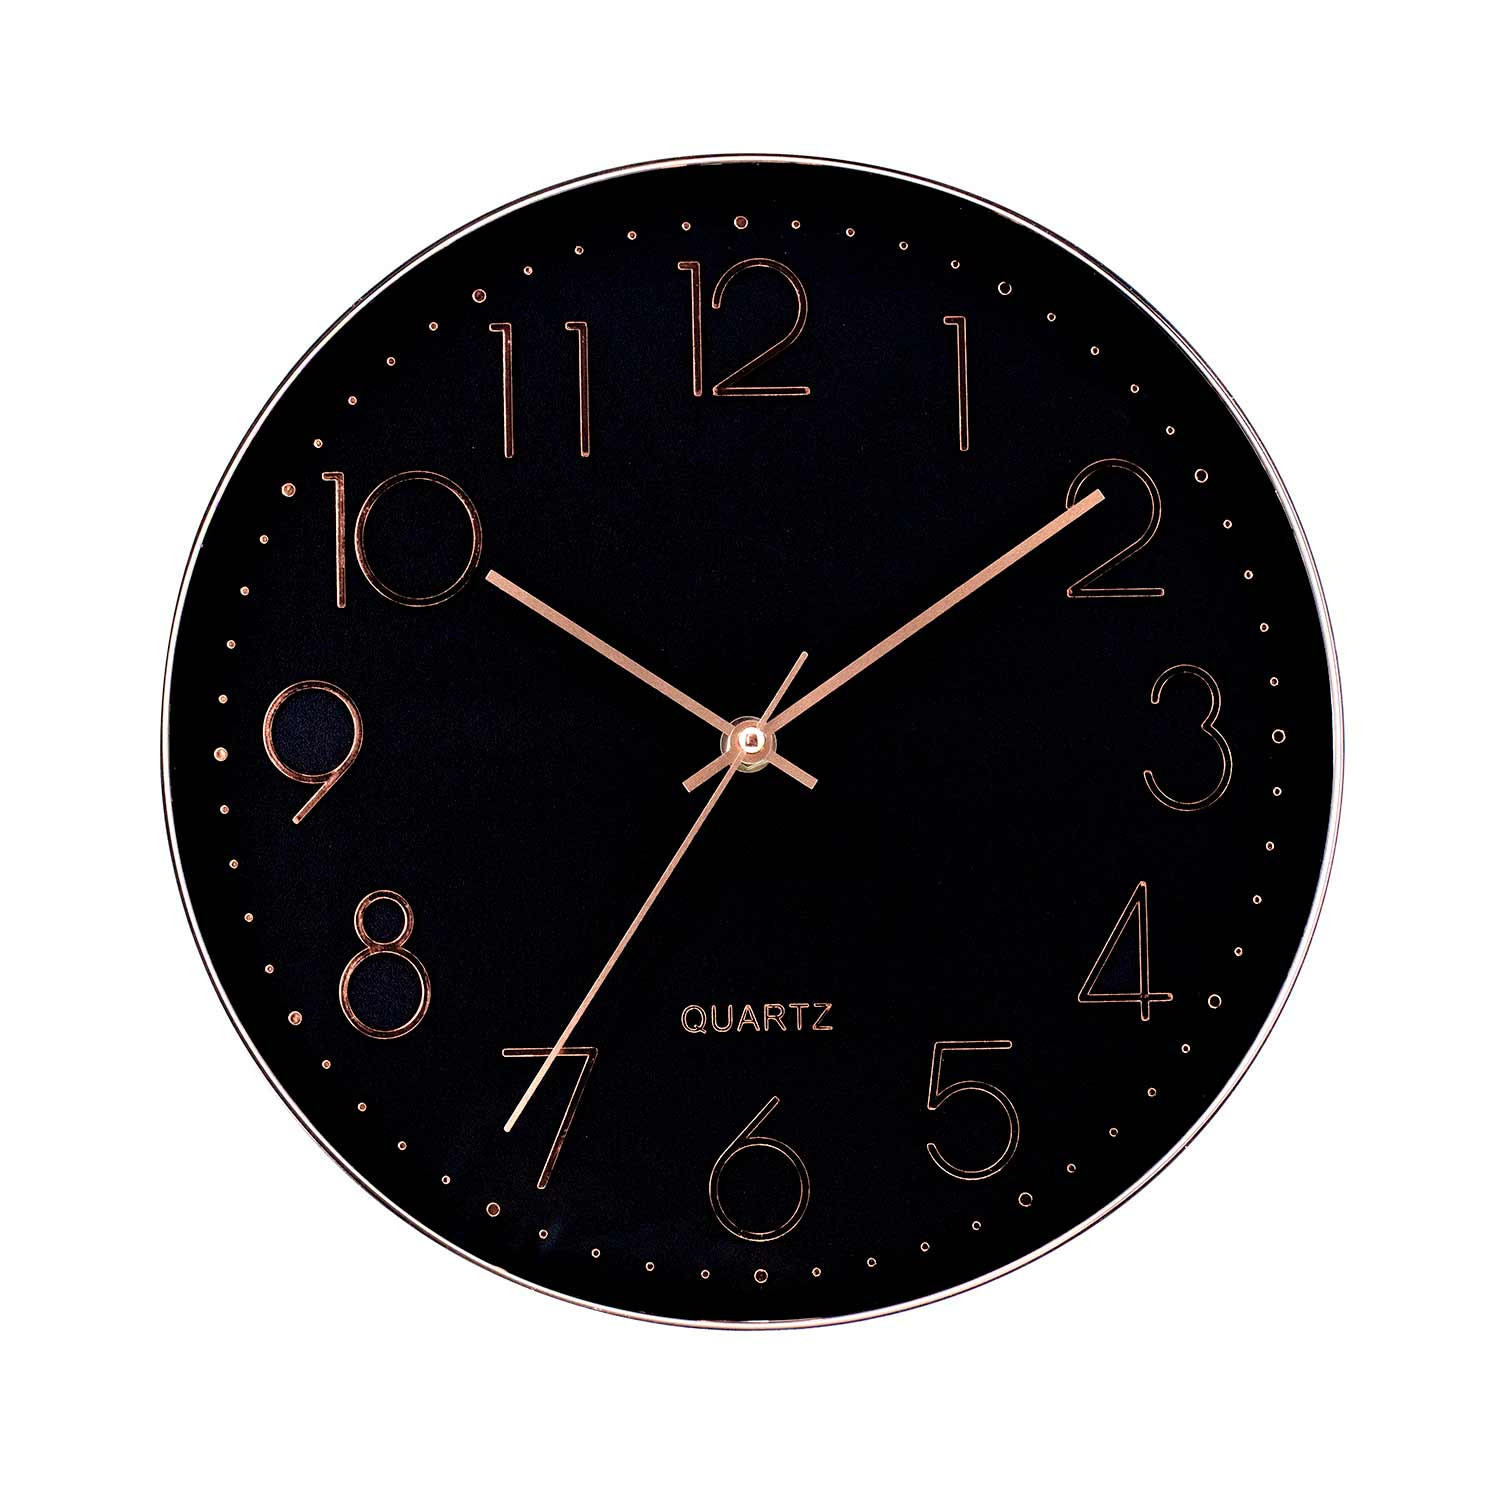 Relógio de parede moderno em relevo com mostrador preto Ø30 cm O91 Relógios de parede 1